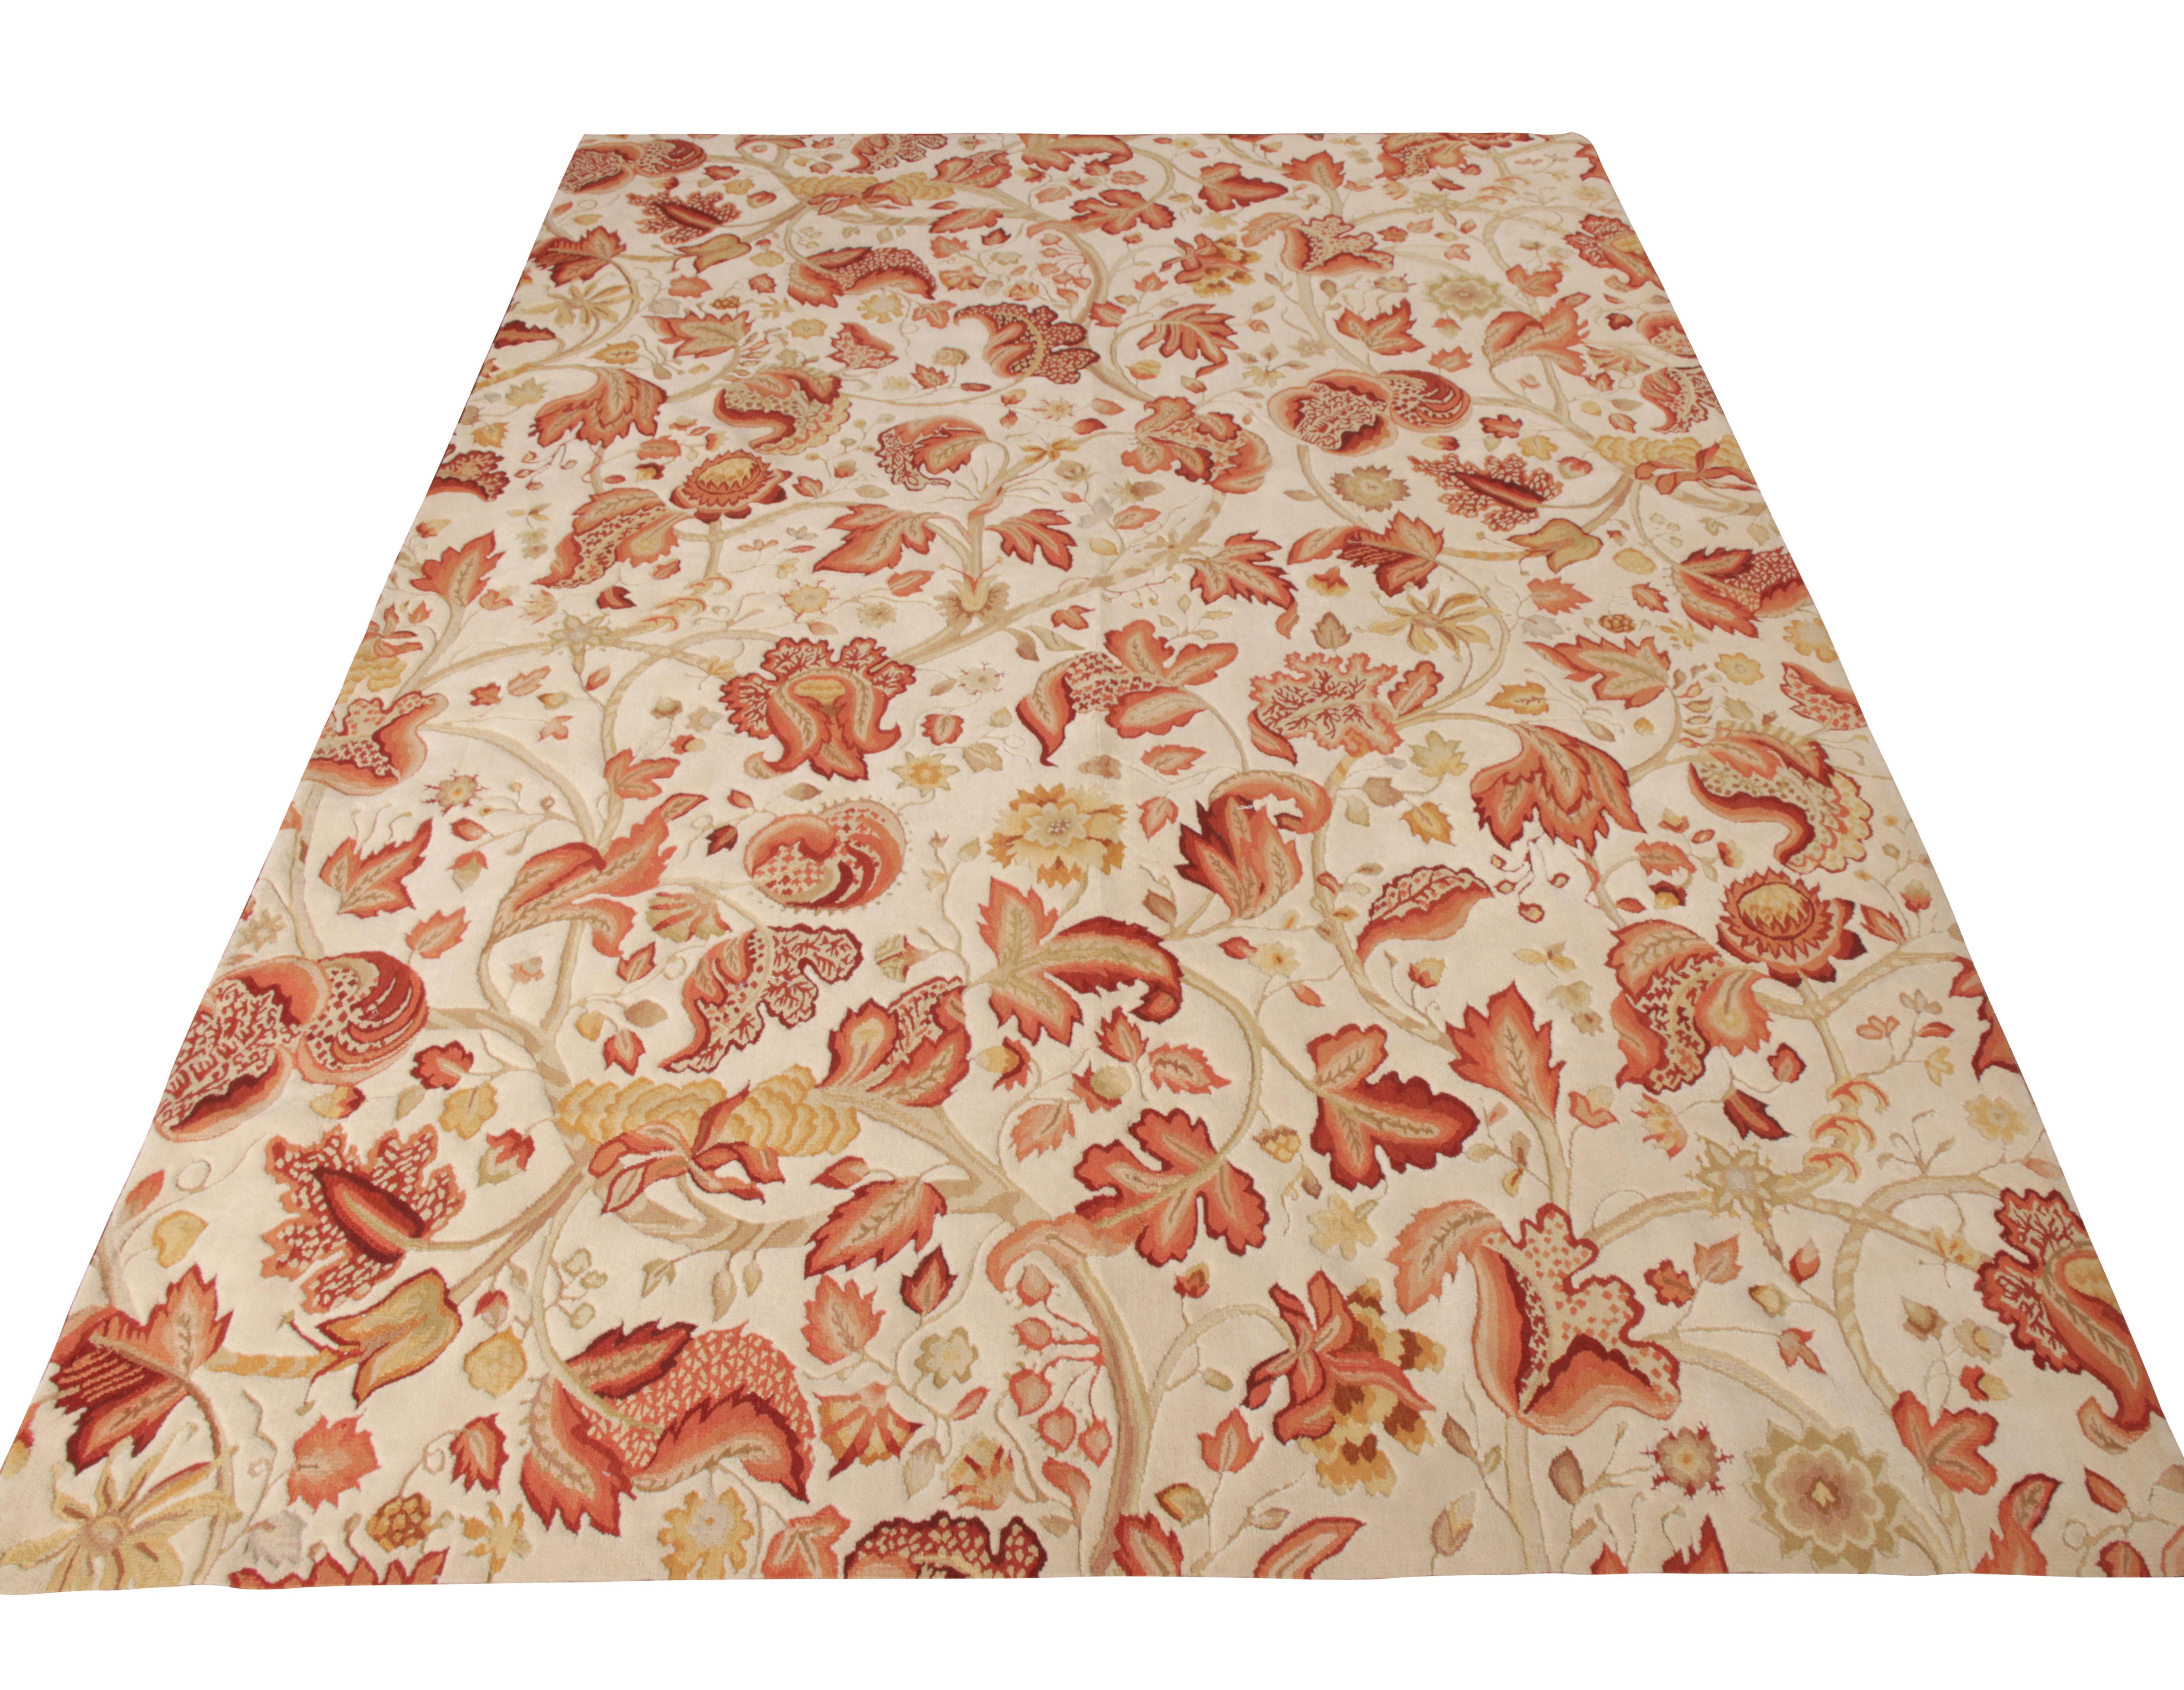 De la collection européenne de Rug & Kilim, une ode 7x9 aux tapis Tudor jouant sur l'esthétique florale dans un cadre contemporain. Incarnant l'élégance, le motif s'épanouit dans un rouge éclatant sur un fond blanc, complété par de subtiles touches